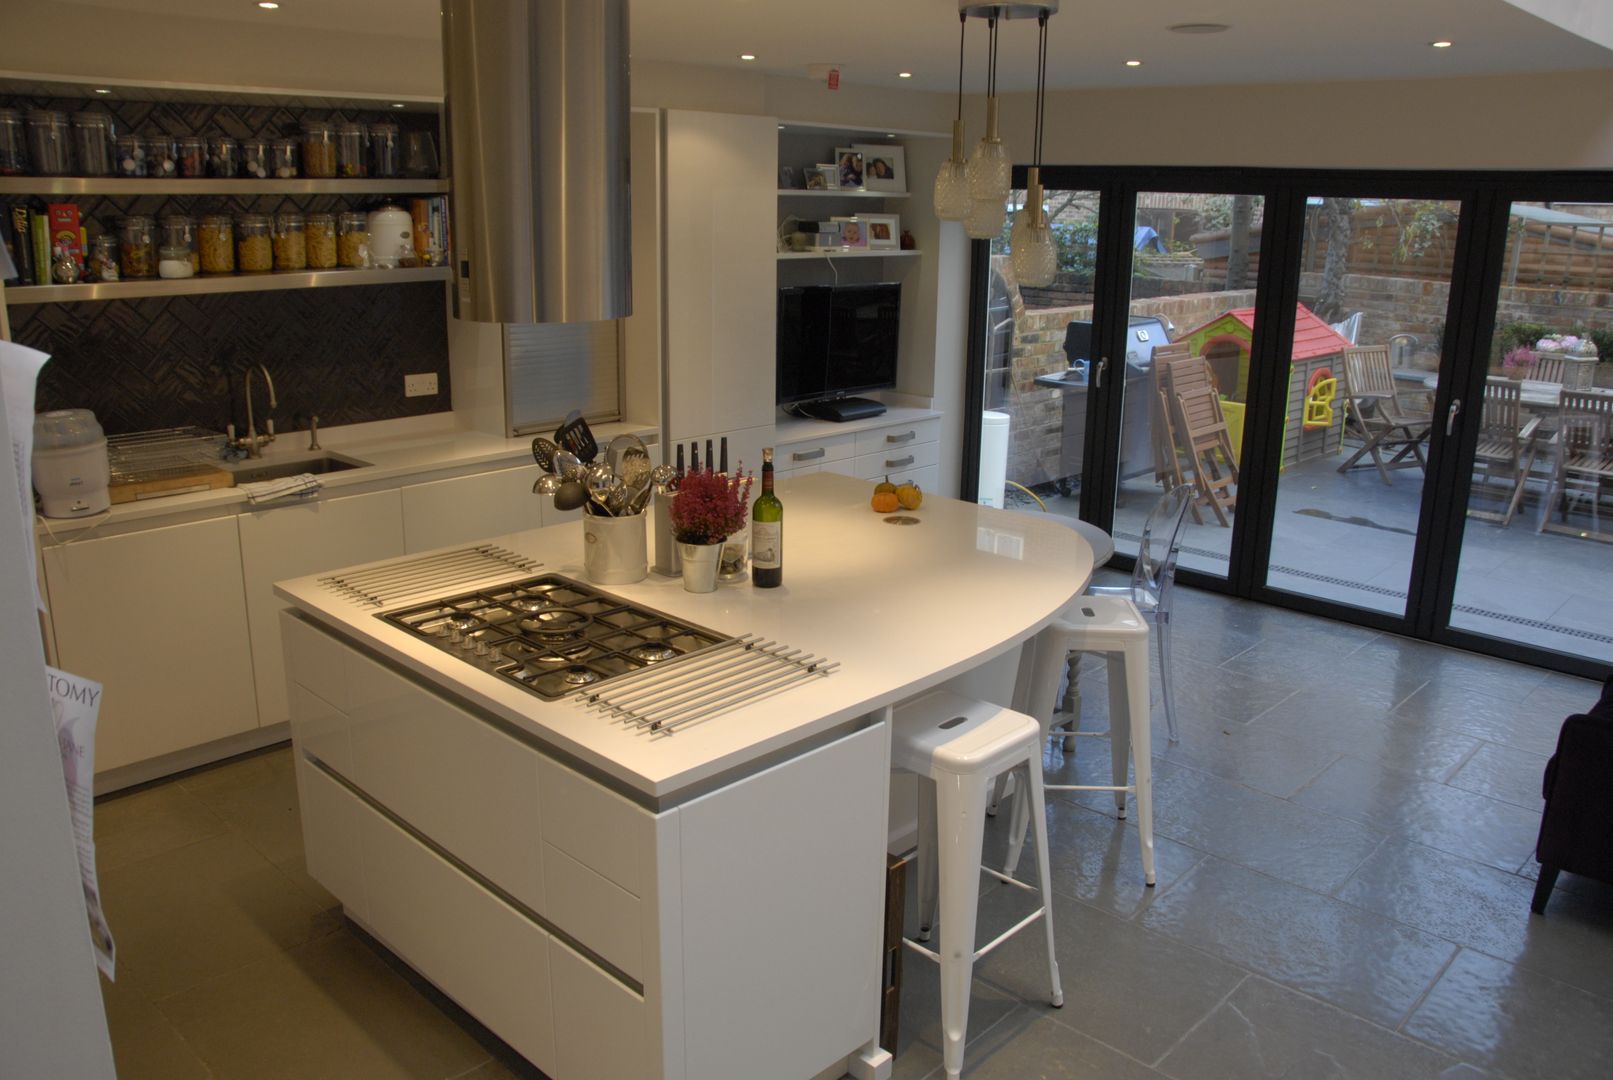 High gloss handleless kitchen Greengage Interiors Cocinas modernas handleless,high gloss